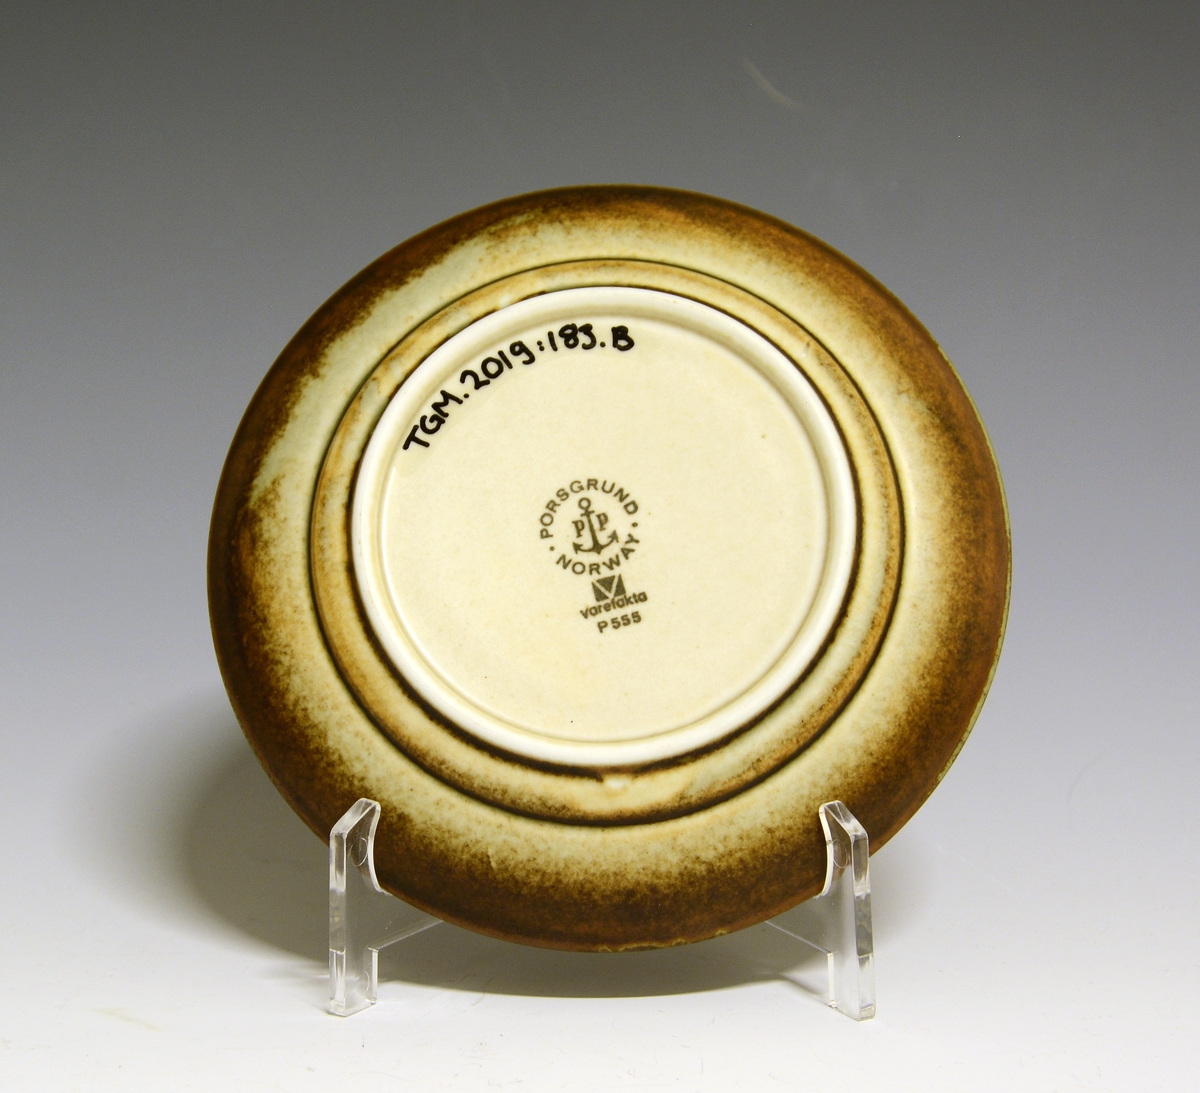 Kaffeskål av porselen. 
Modell: Eystein
Dekor: Lava